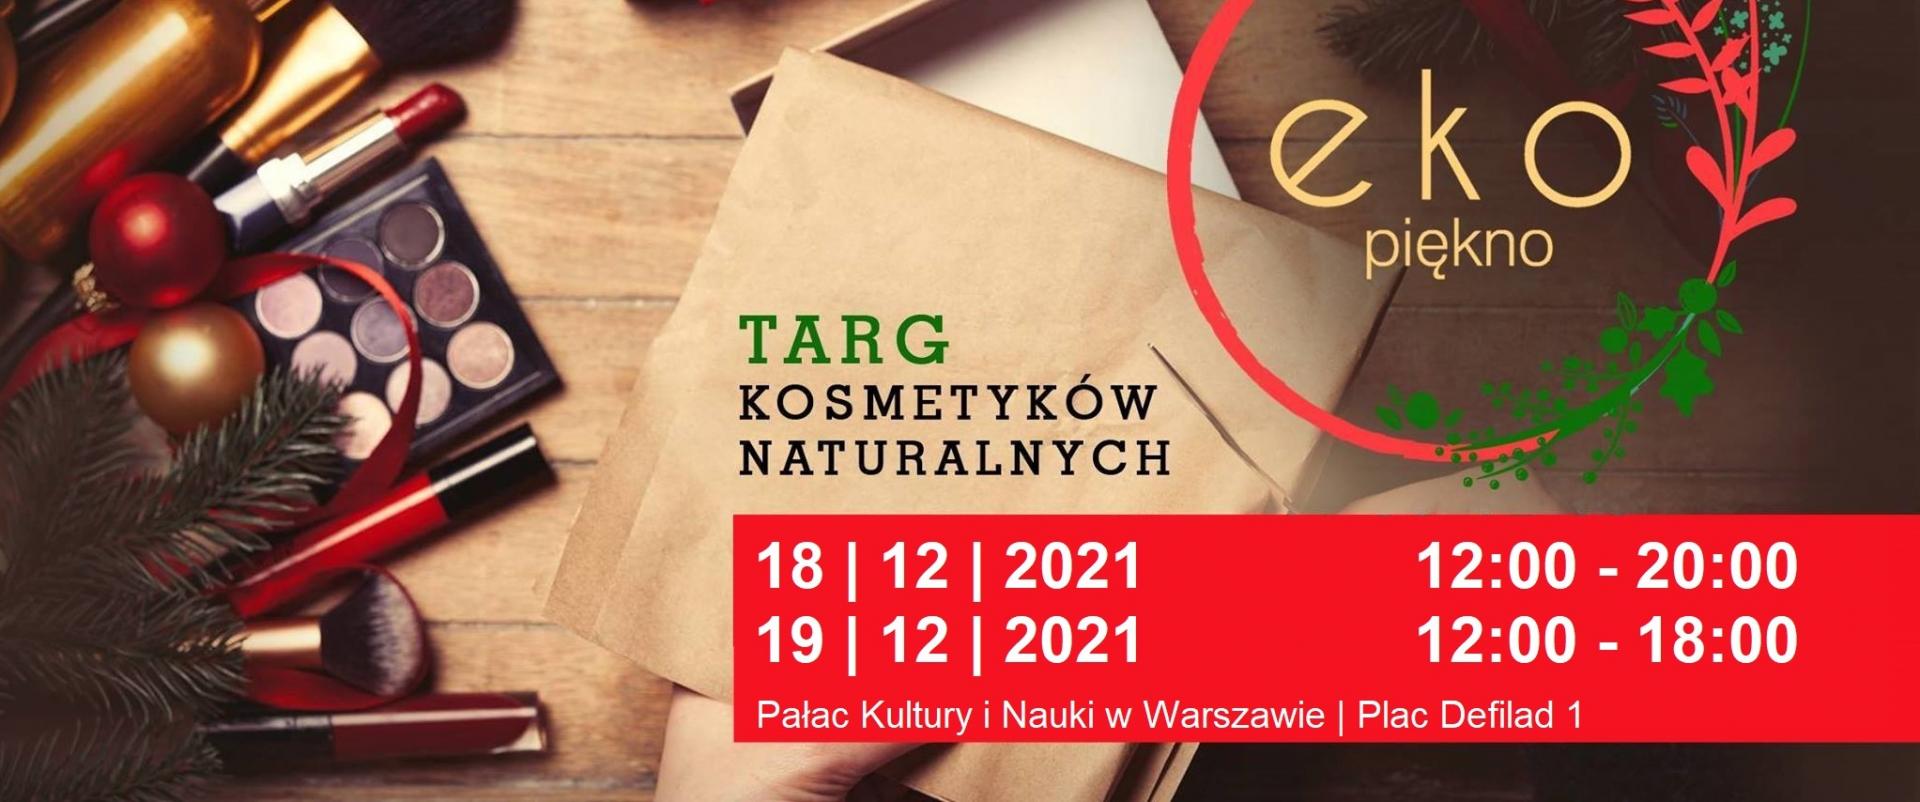 18-19 grudnia - Targi Kosmetyków Naturalnych Ekopiękno w Warszawie